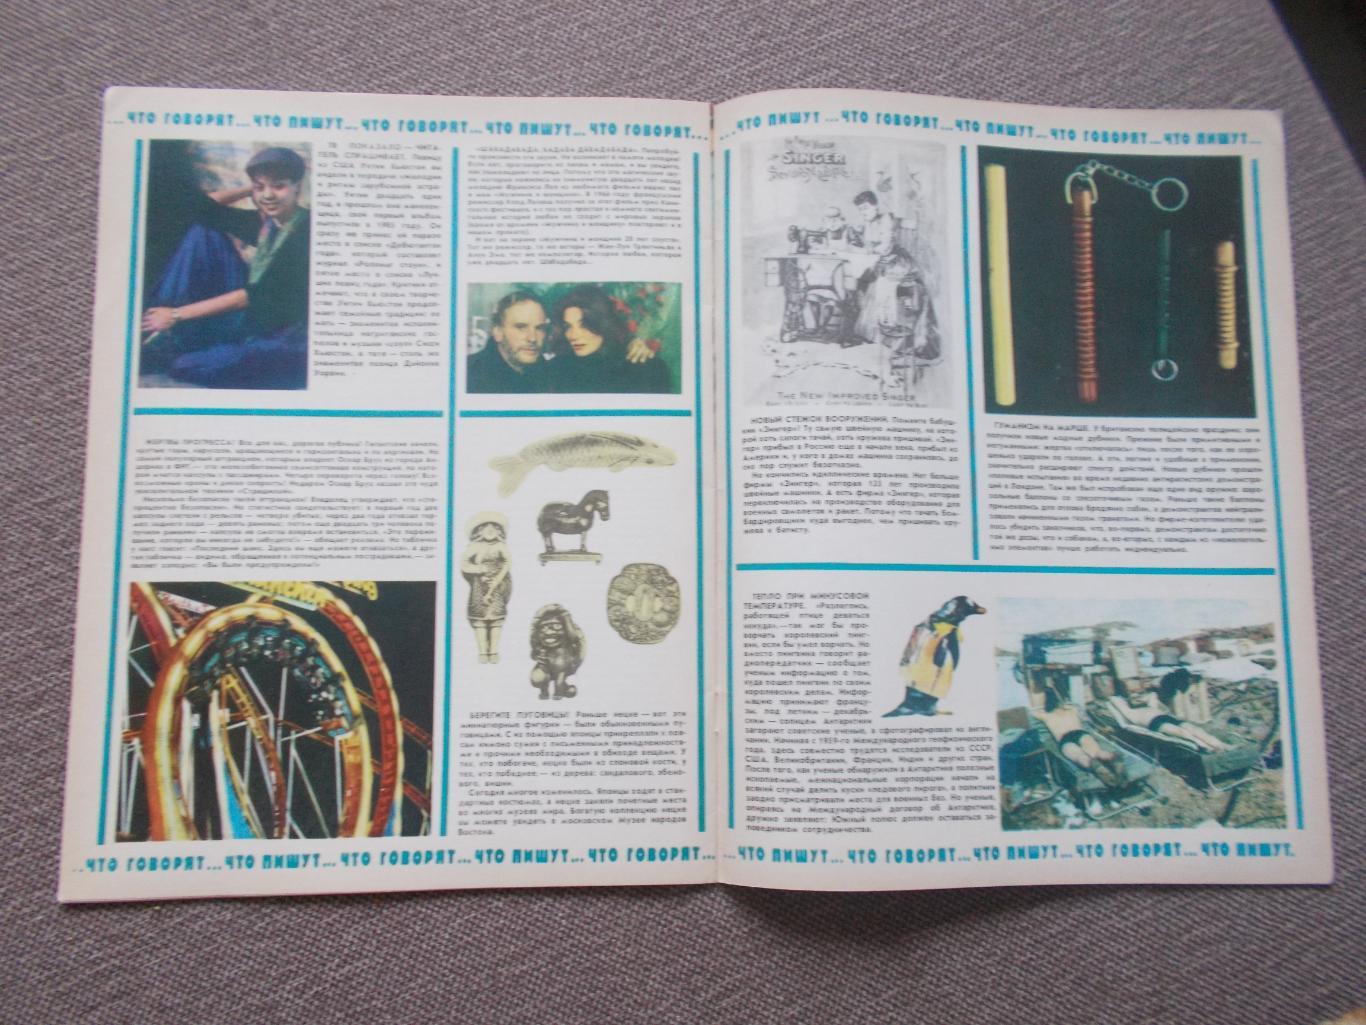 Журнал СССР :Ровесник№ 6 (июнь) 1986 г. (Молодежный музыкальный журнал) 3